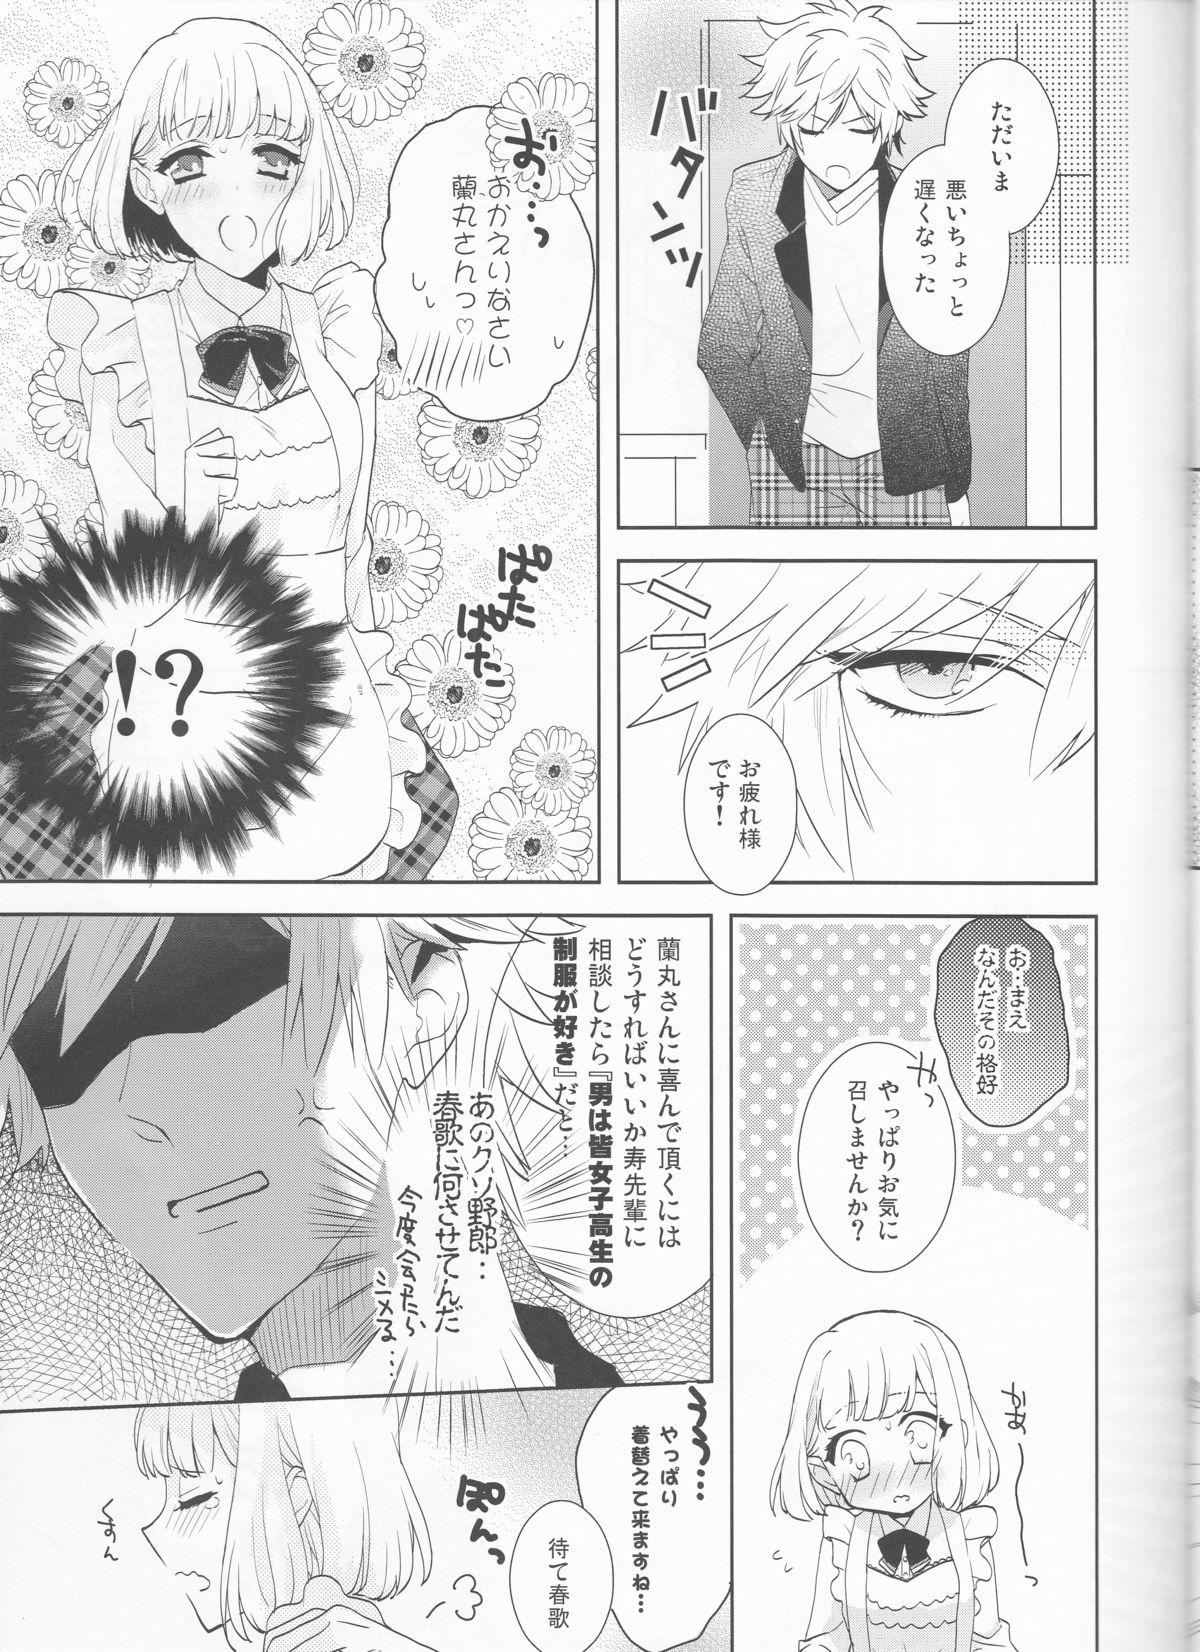 Cumming Otona no Hajimari - Uta no prince-sama Ameture Porn - Page 8